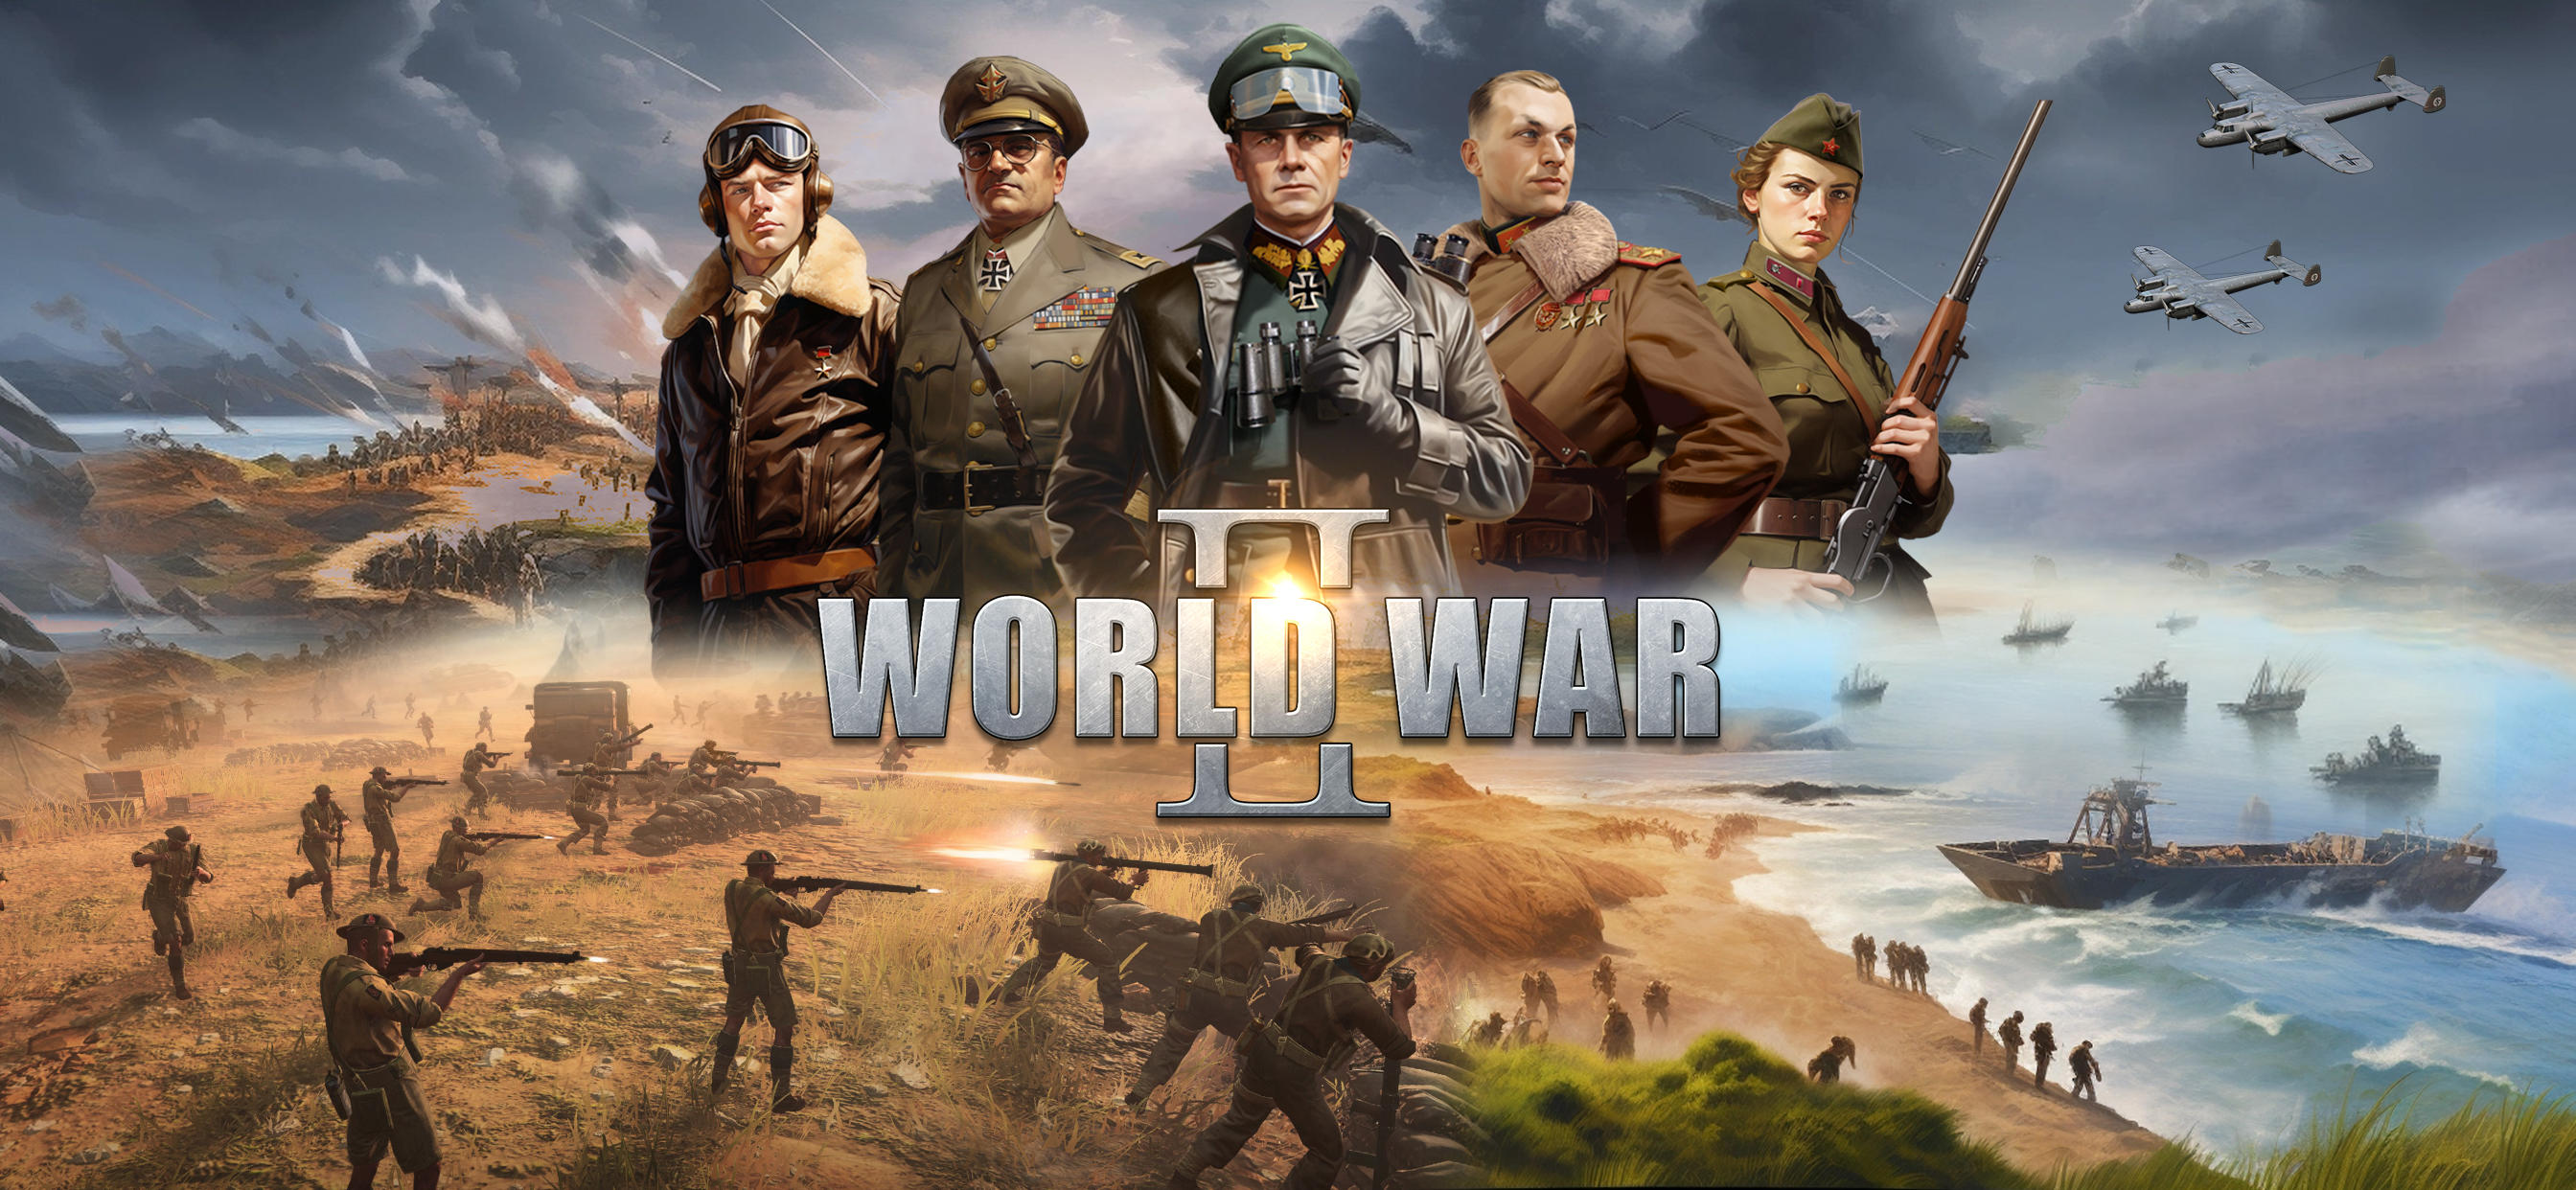 Screenshot 1 of Великая война: стратегические игры о Второй мировой войне 40